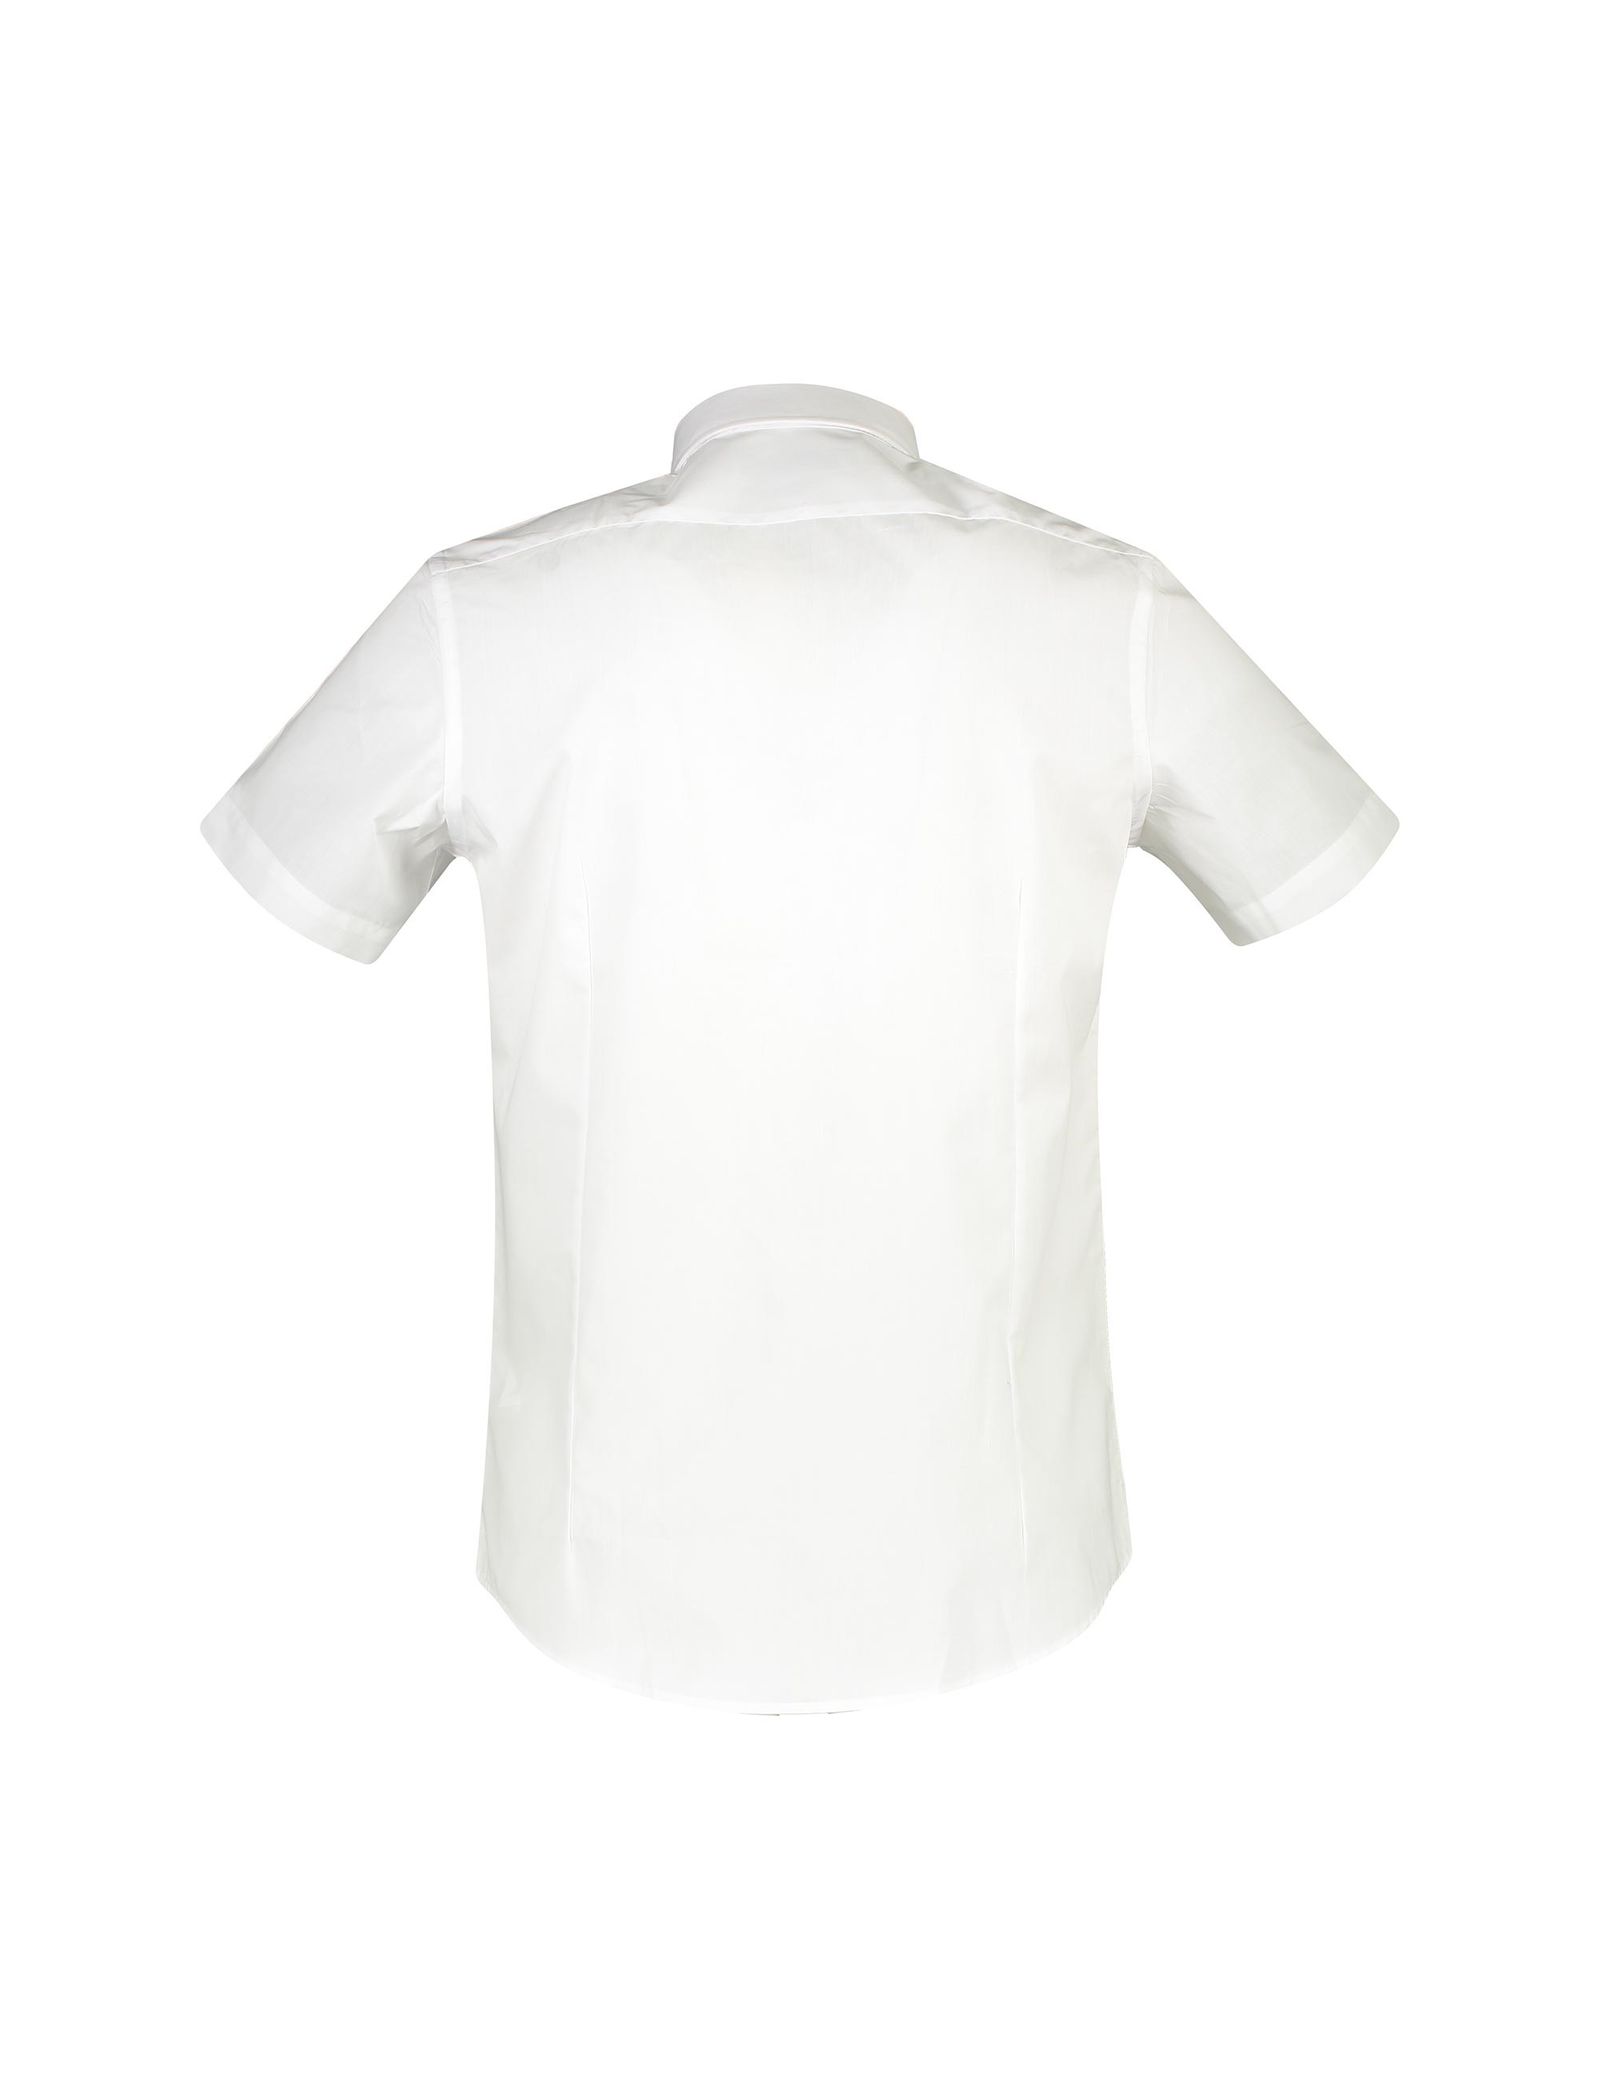 پیراهن آستین کوتاه مردانه - یوپیم - سفيد - 3